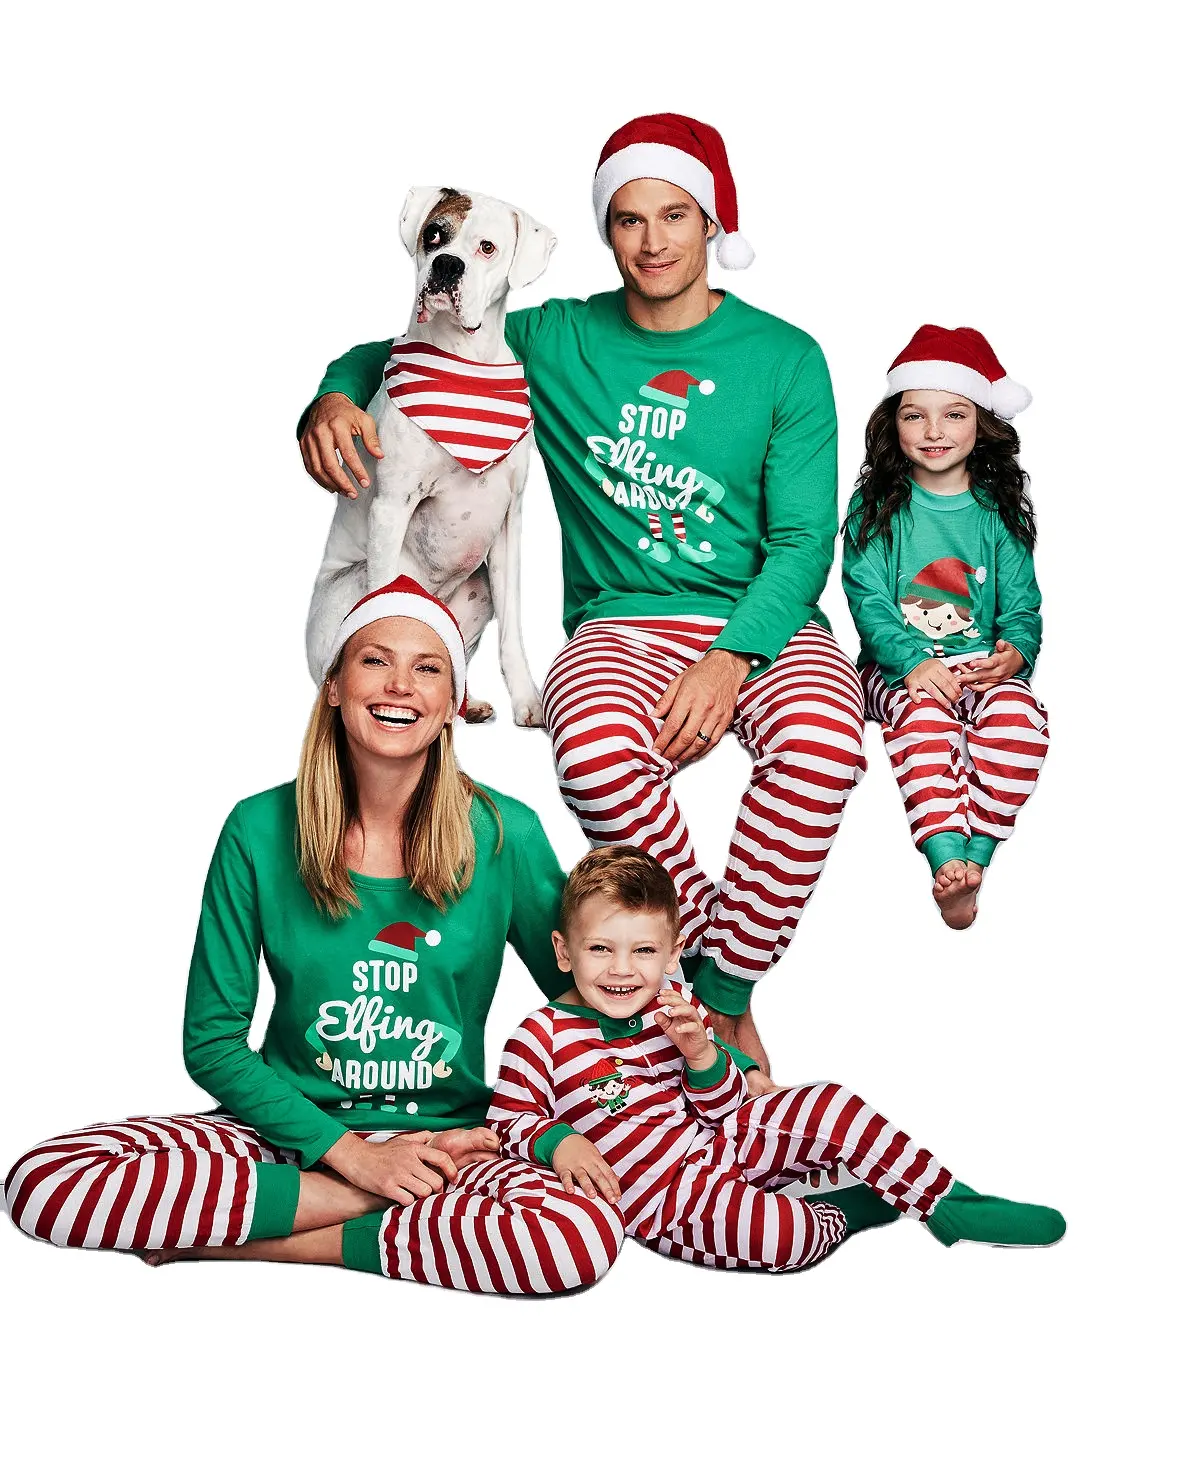 Set Piyama Natal Mode Panas Desain Celana Panjang Bergaris Set Piyama Keluarga